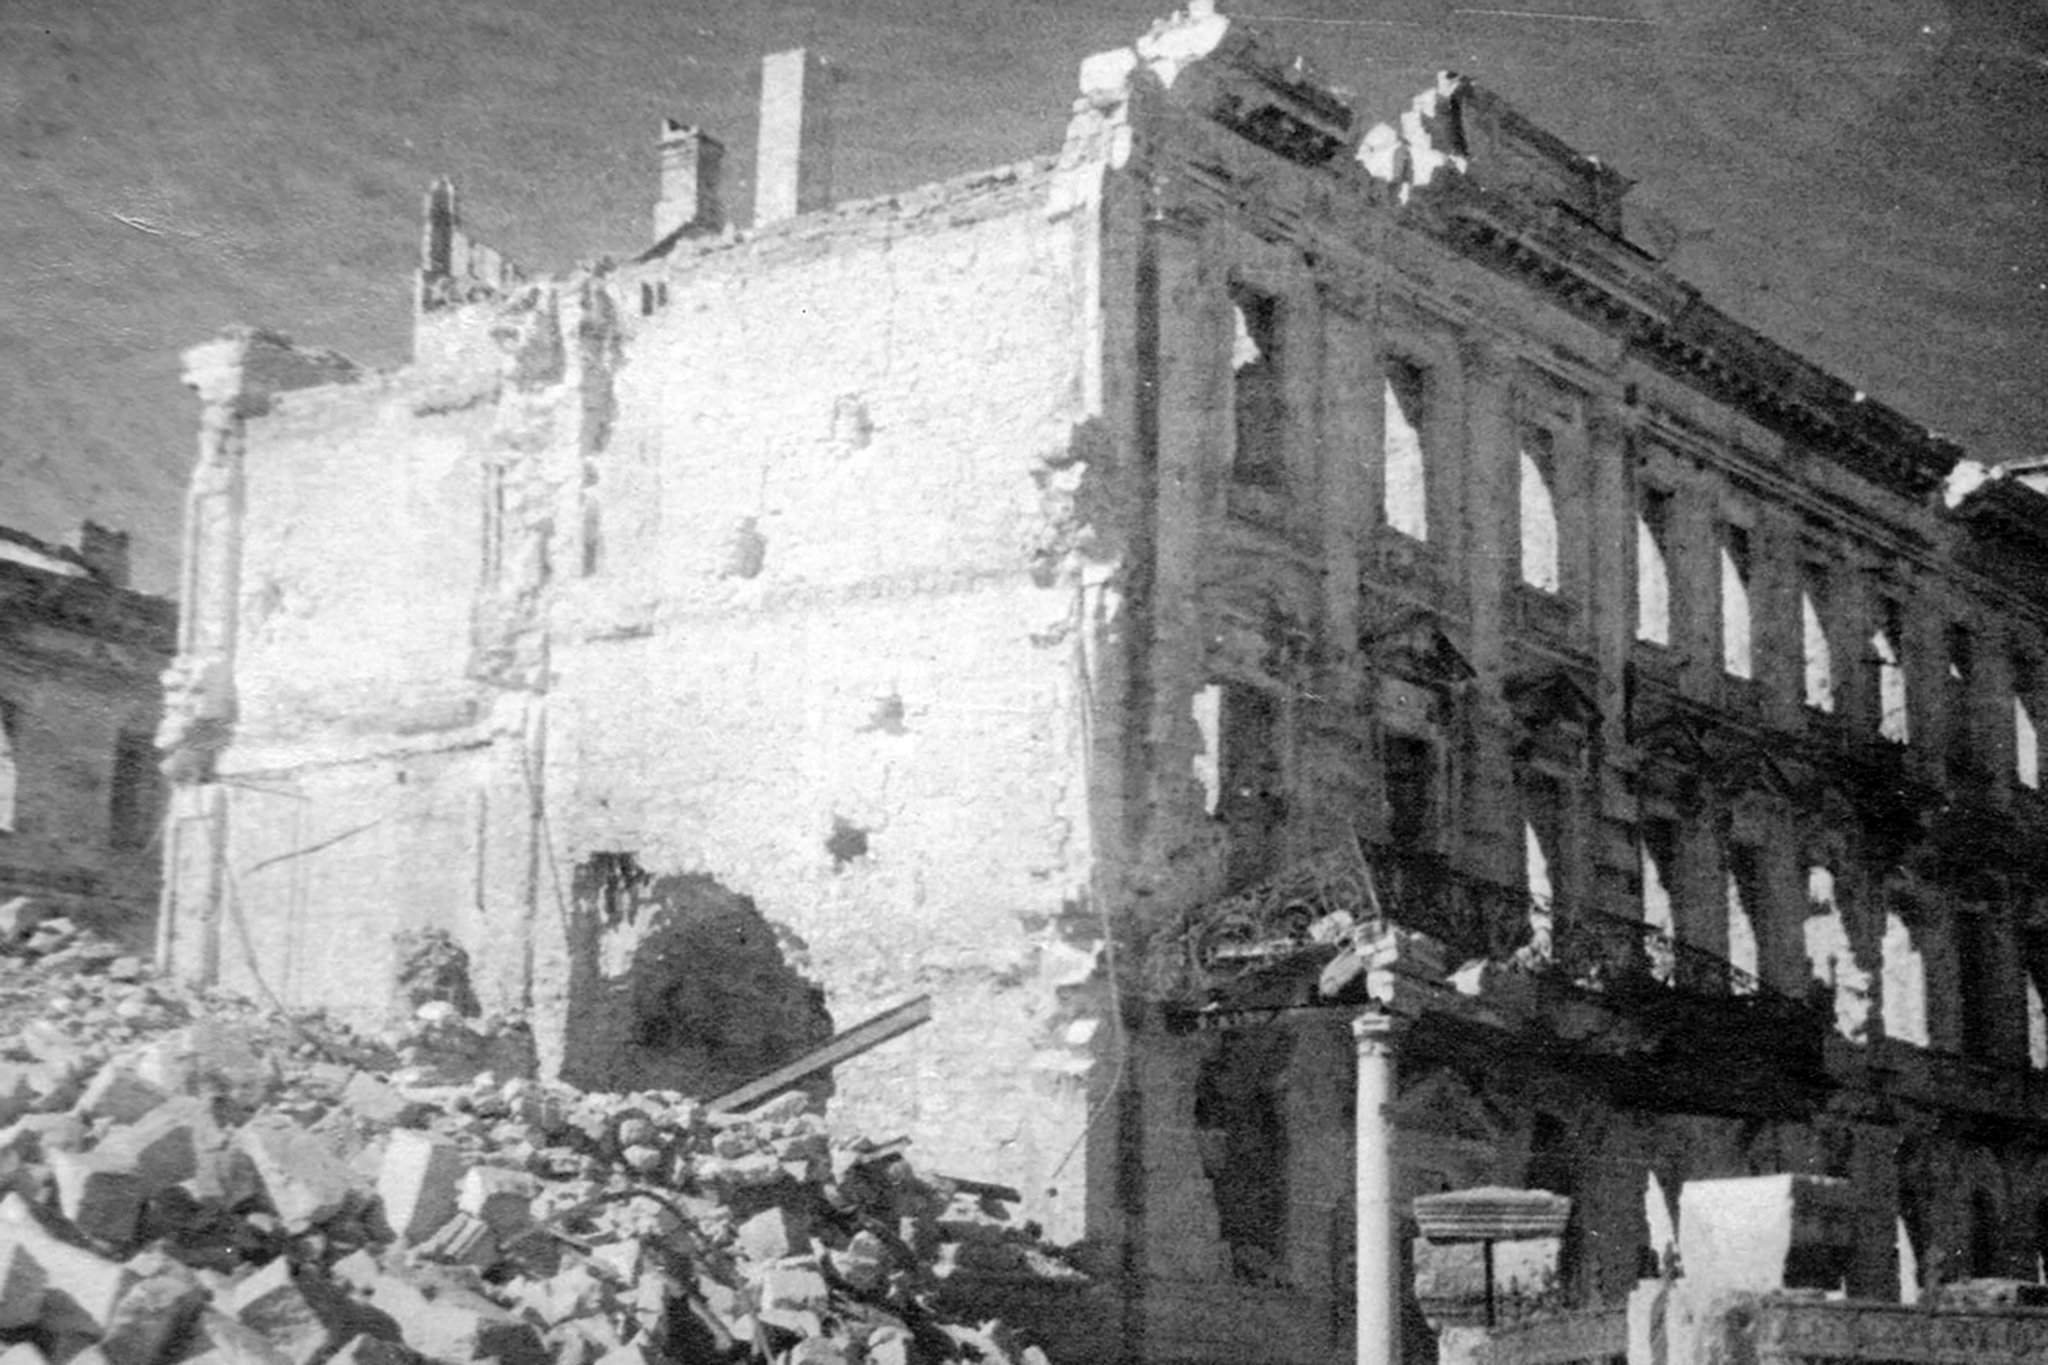 Севастополь 1944 год. Разрушенный Севастополь 1944. Разрушенные здания Севастополя 1944. Разрушения в Севастополе май 1944 год. Руины Севастополя 1944.